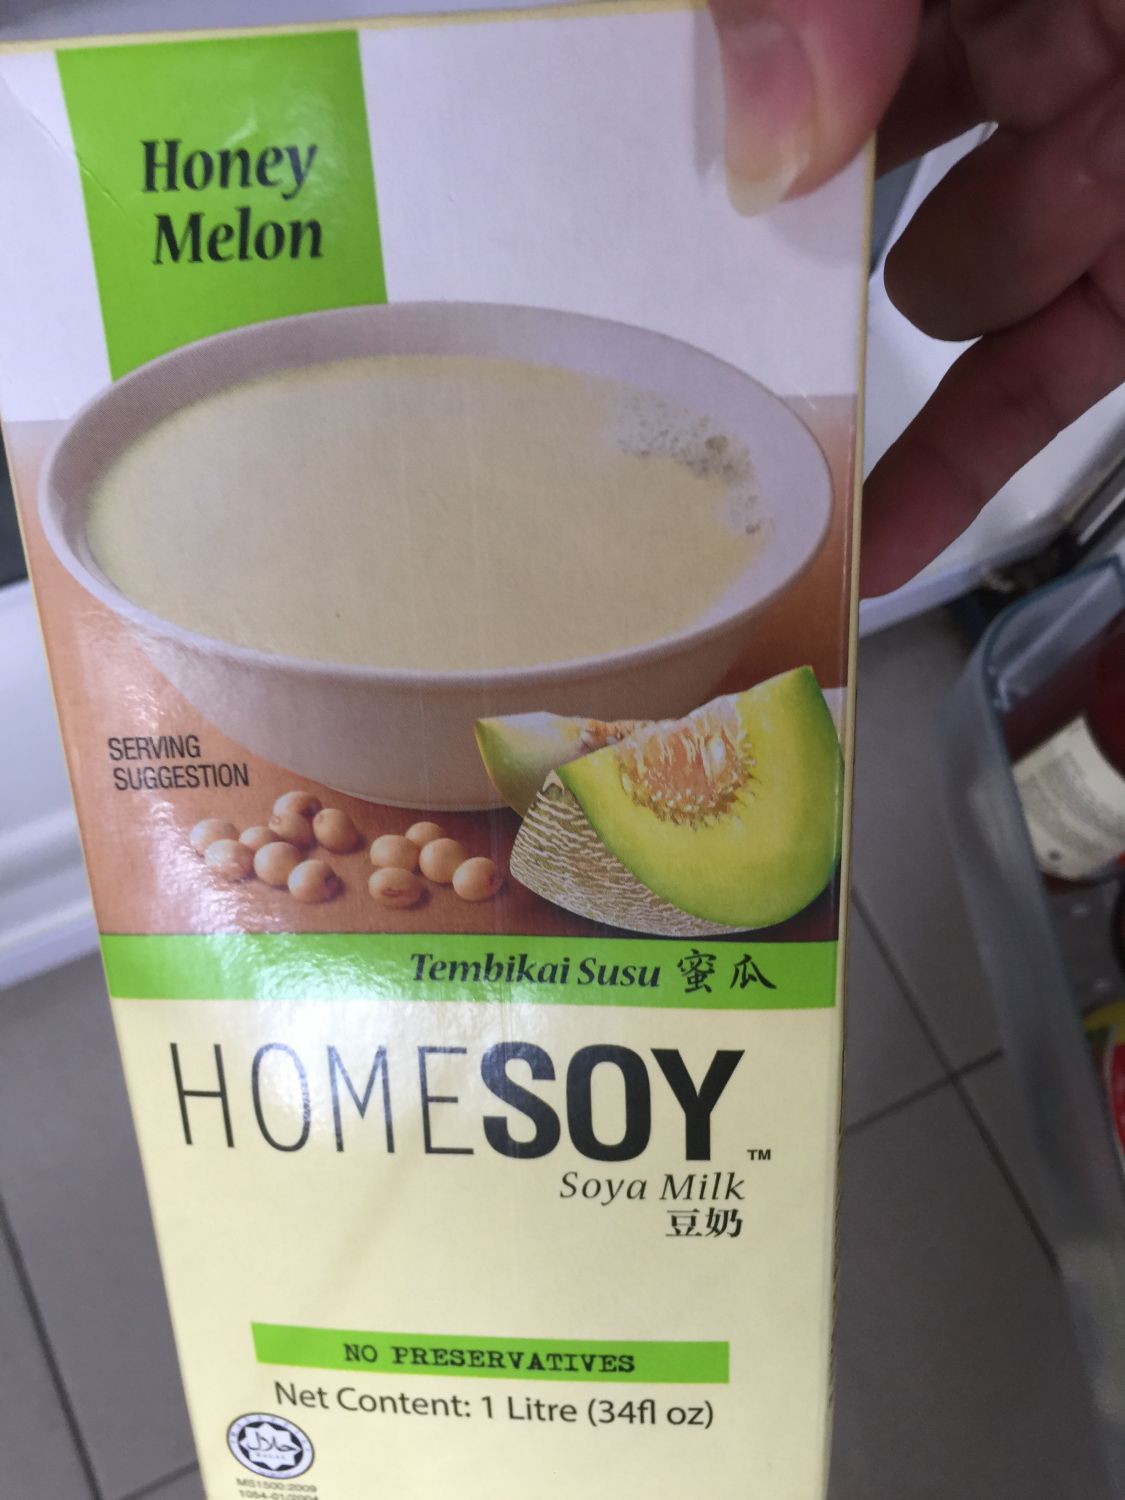 homesoy honey melon